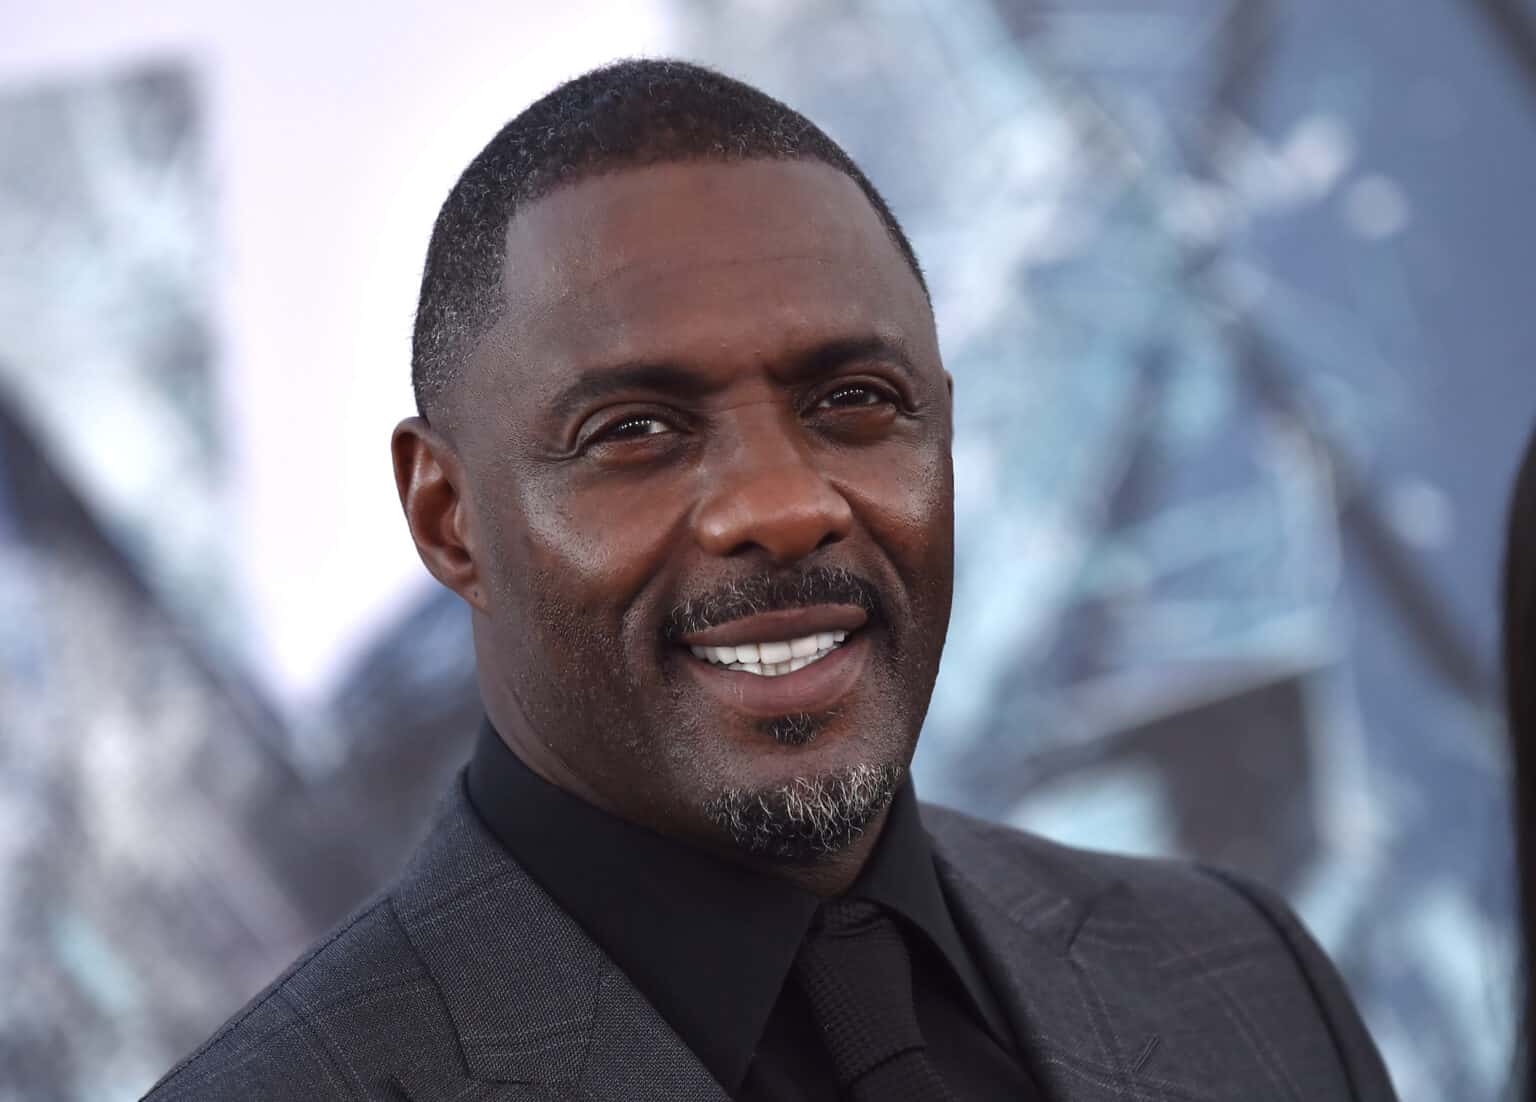 What Religion is Idris Elba?